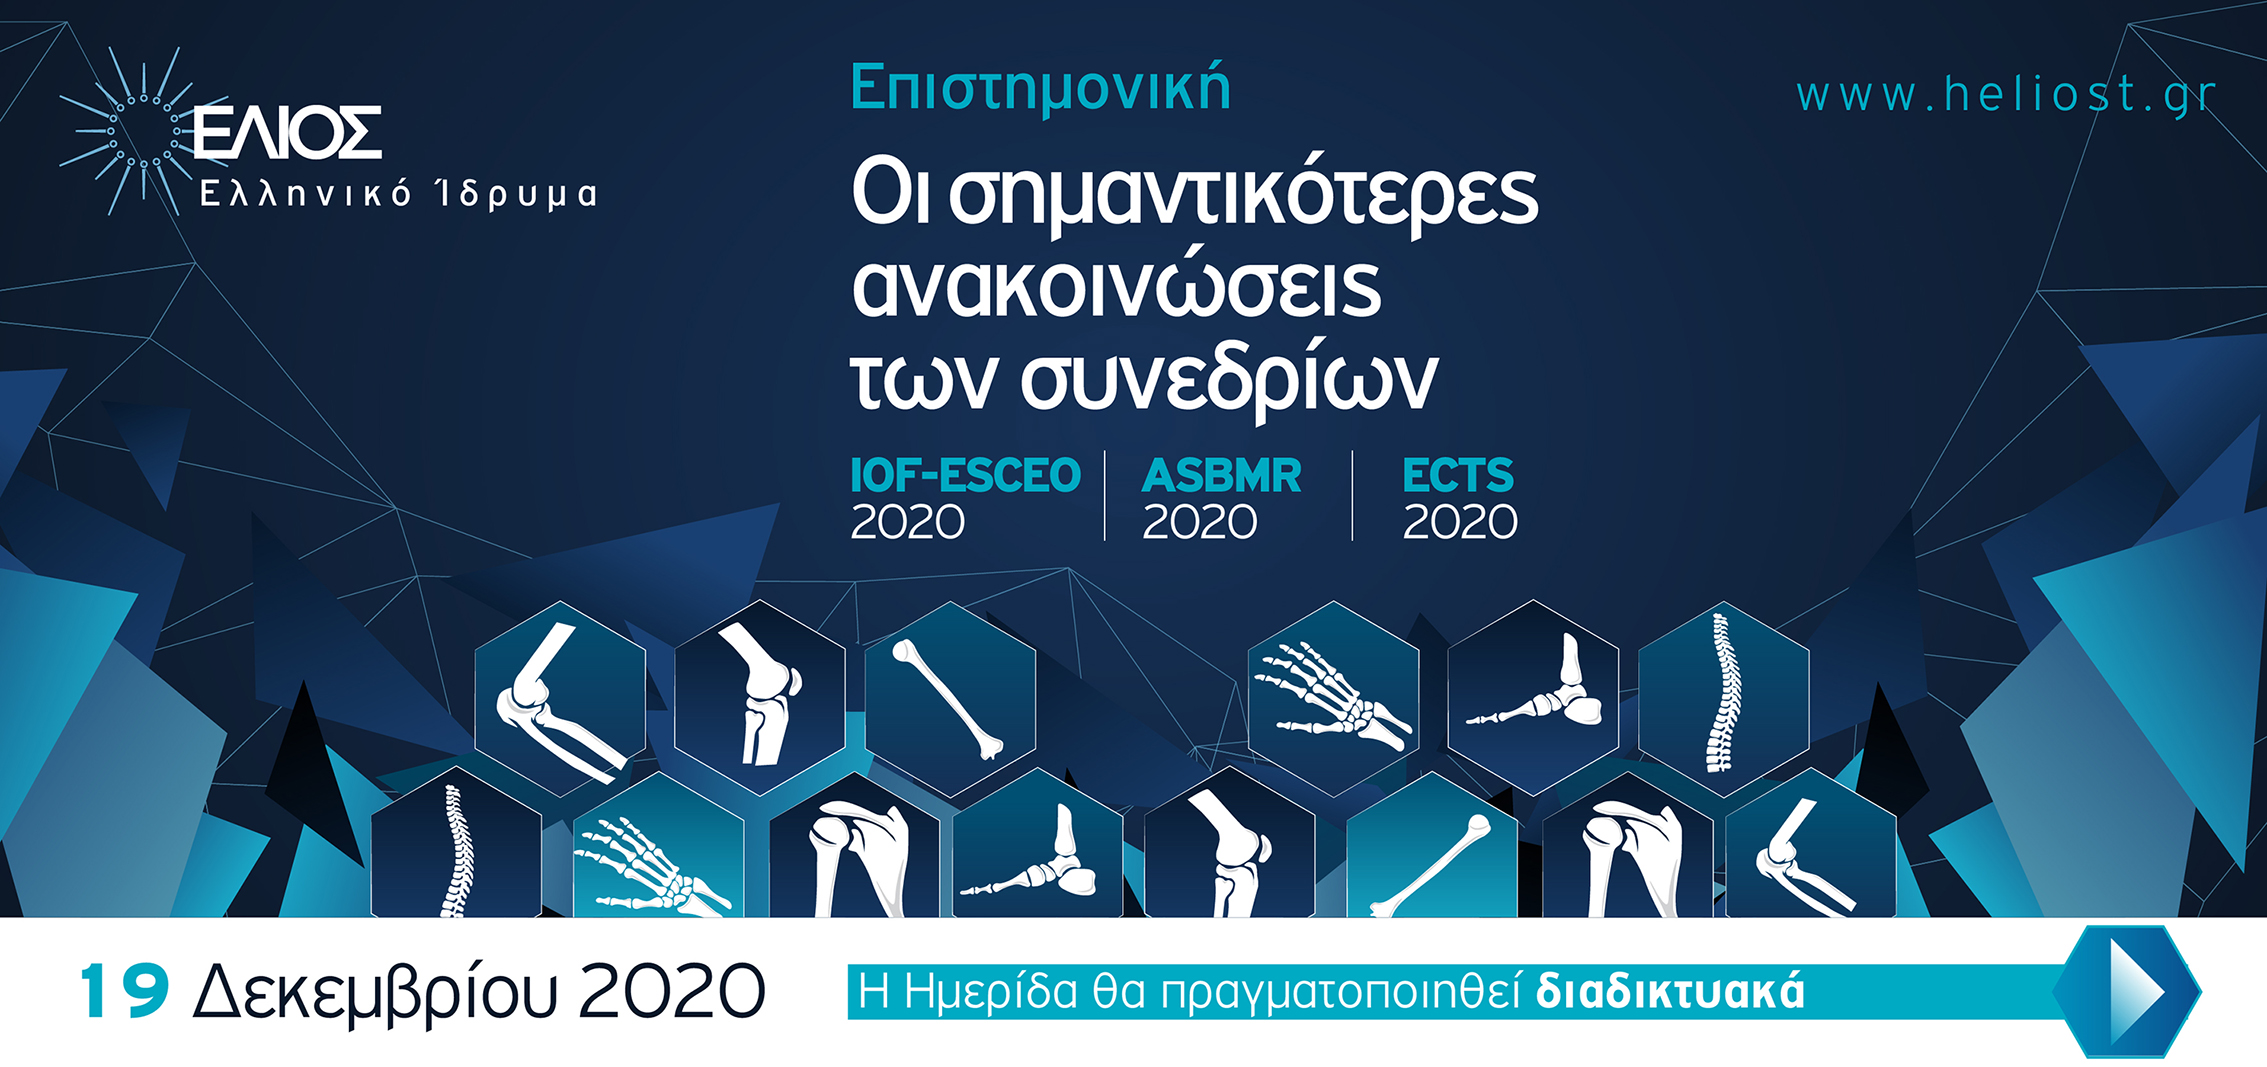 Οι σημαντικότερες ανακοινώσεις των Συνεδρίων IOF-ESCEO 2020-ASBMR 2020- ECTS 2020